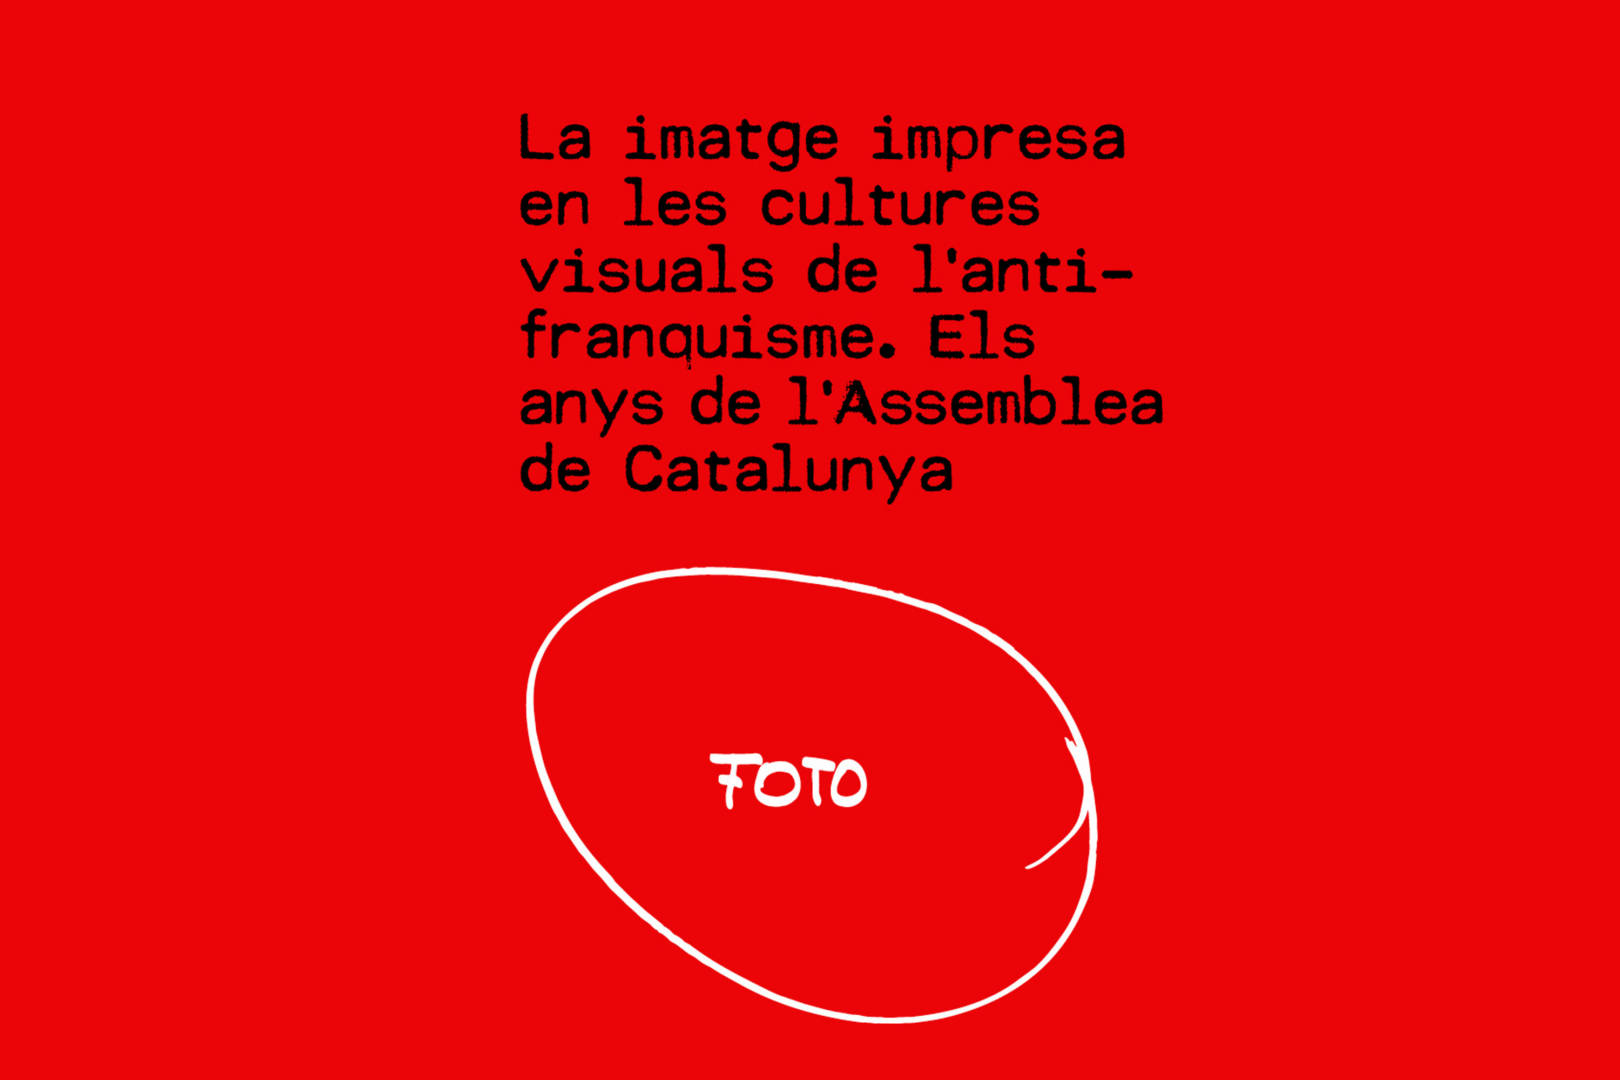 Inauguració exposició "La imatge impresa de les cultures visuals de l'antifranquisme. Els anys de l'assemblea de Catalunya"